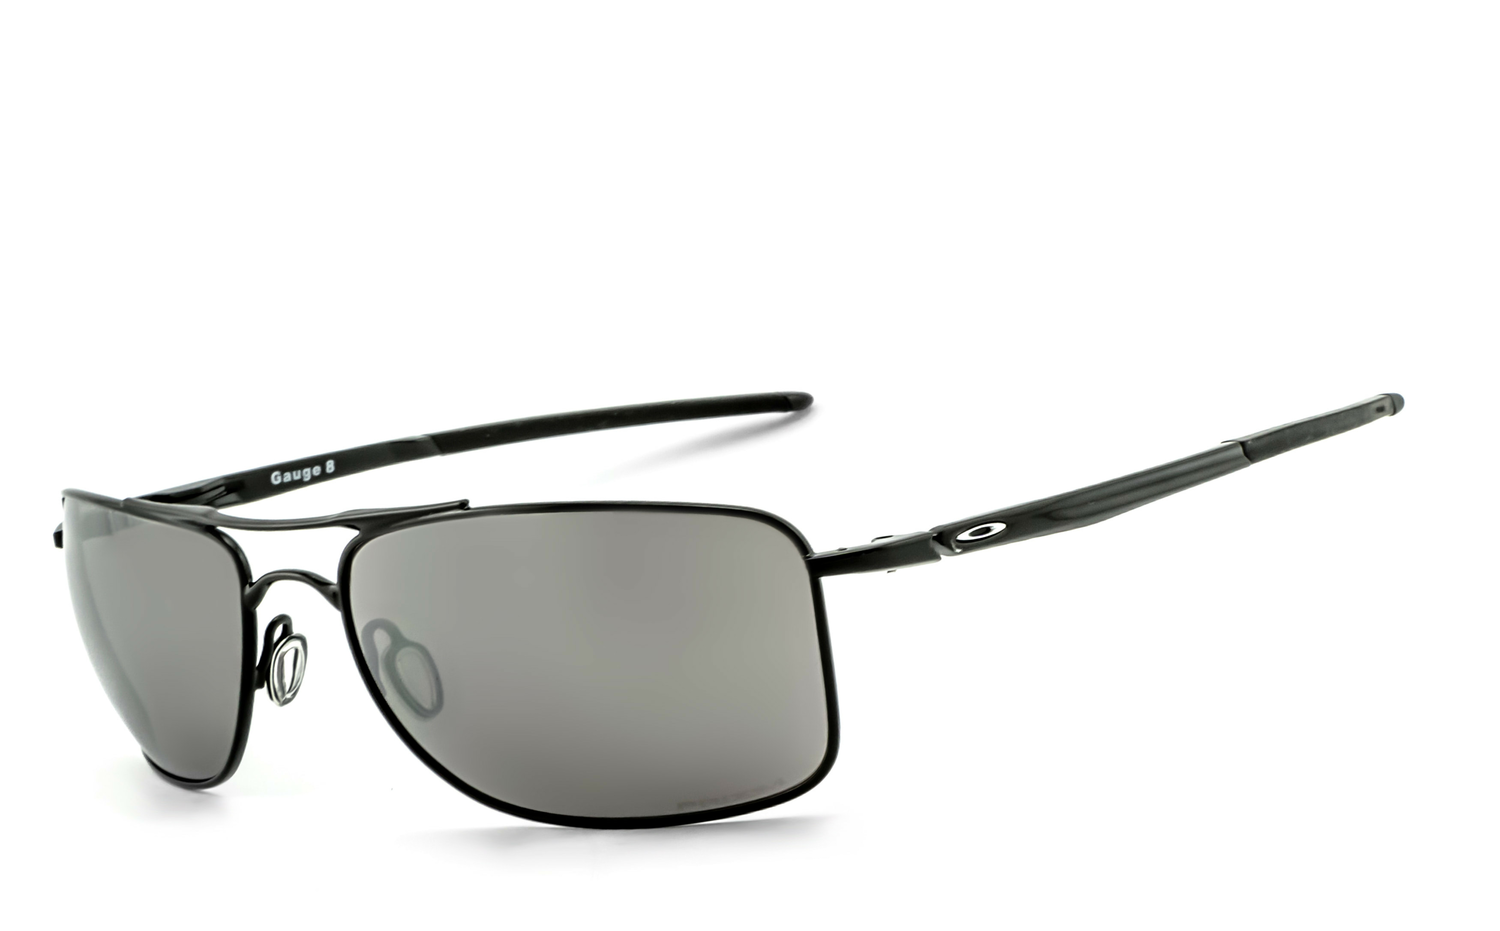 OAKLEY | Gauge 8 - OO4124  Sportbrille, Fahrradbrille, Sonnenbrille, Bikerbrille, Radbrille, UV400 Schutzfilter